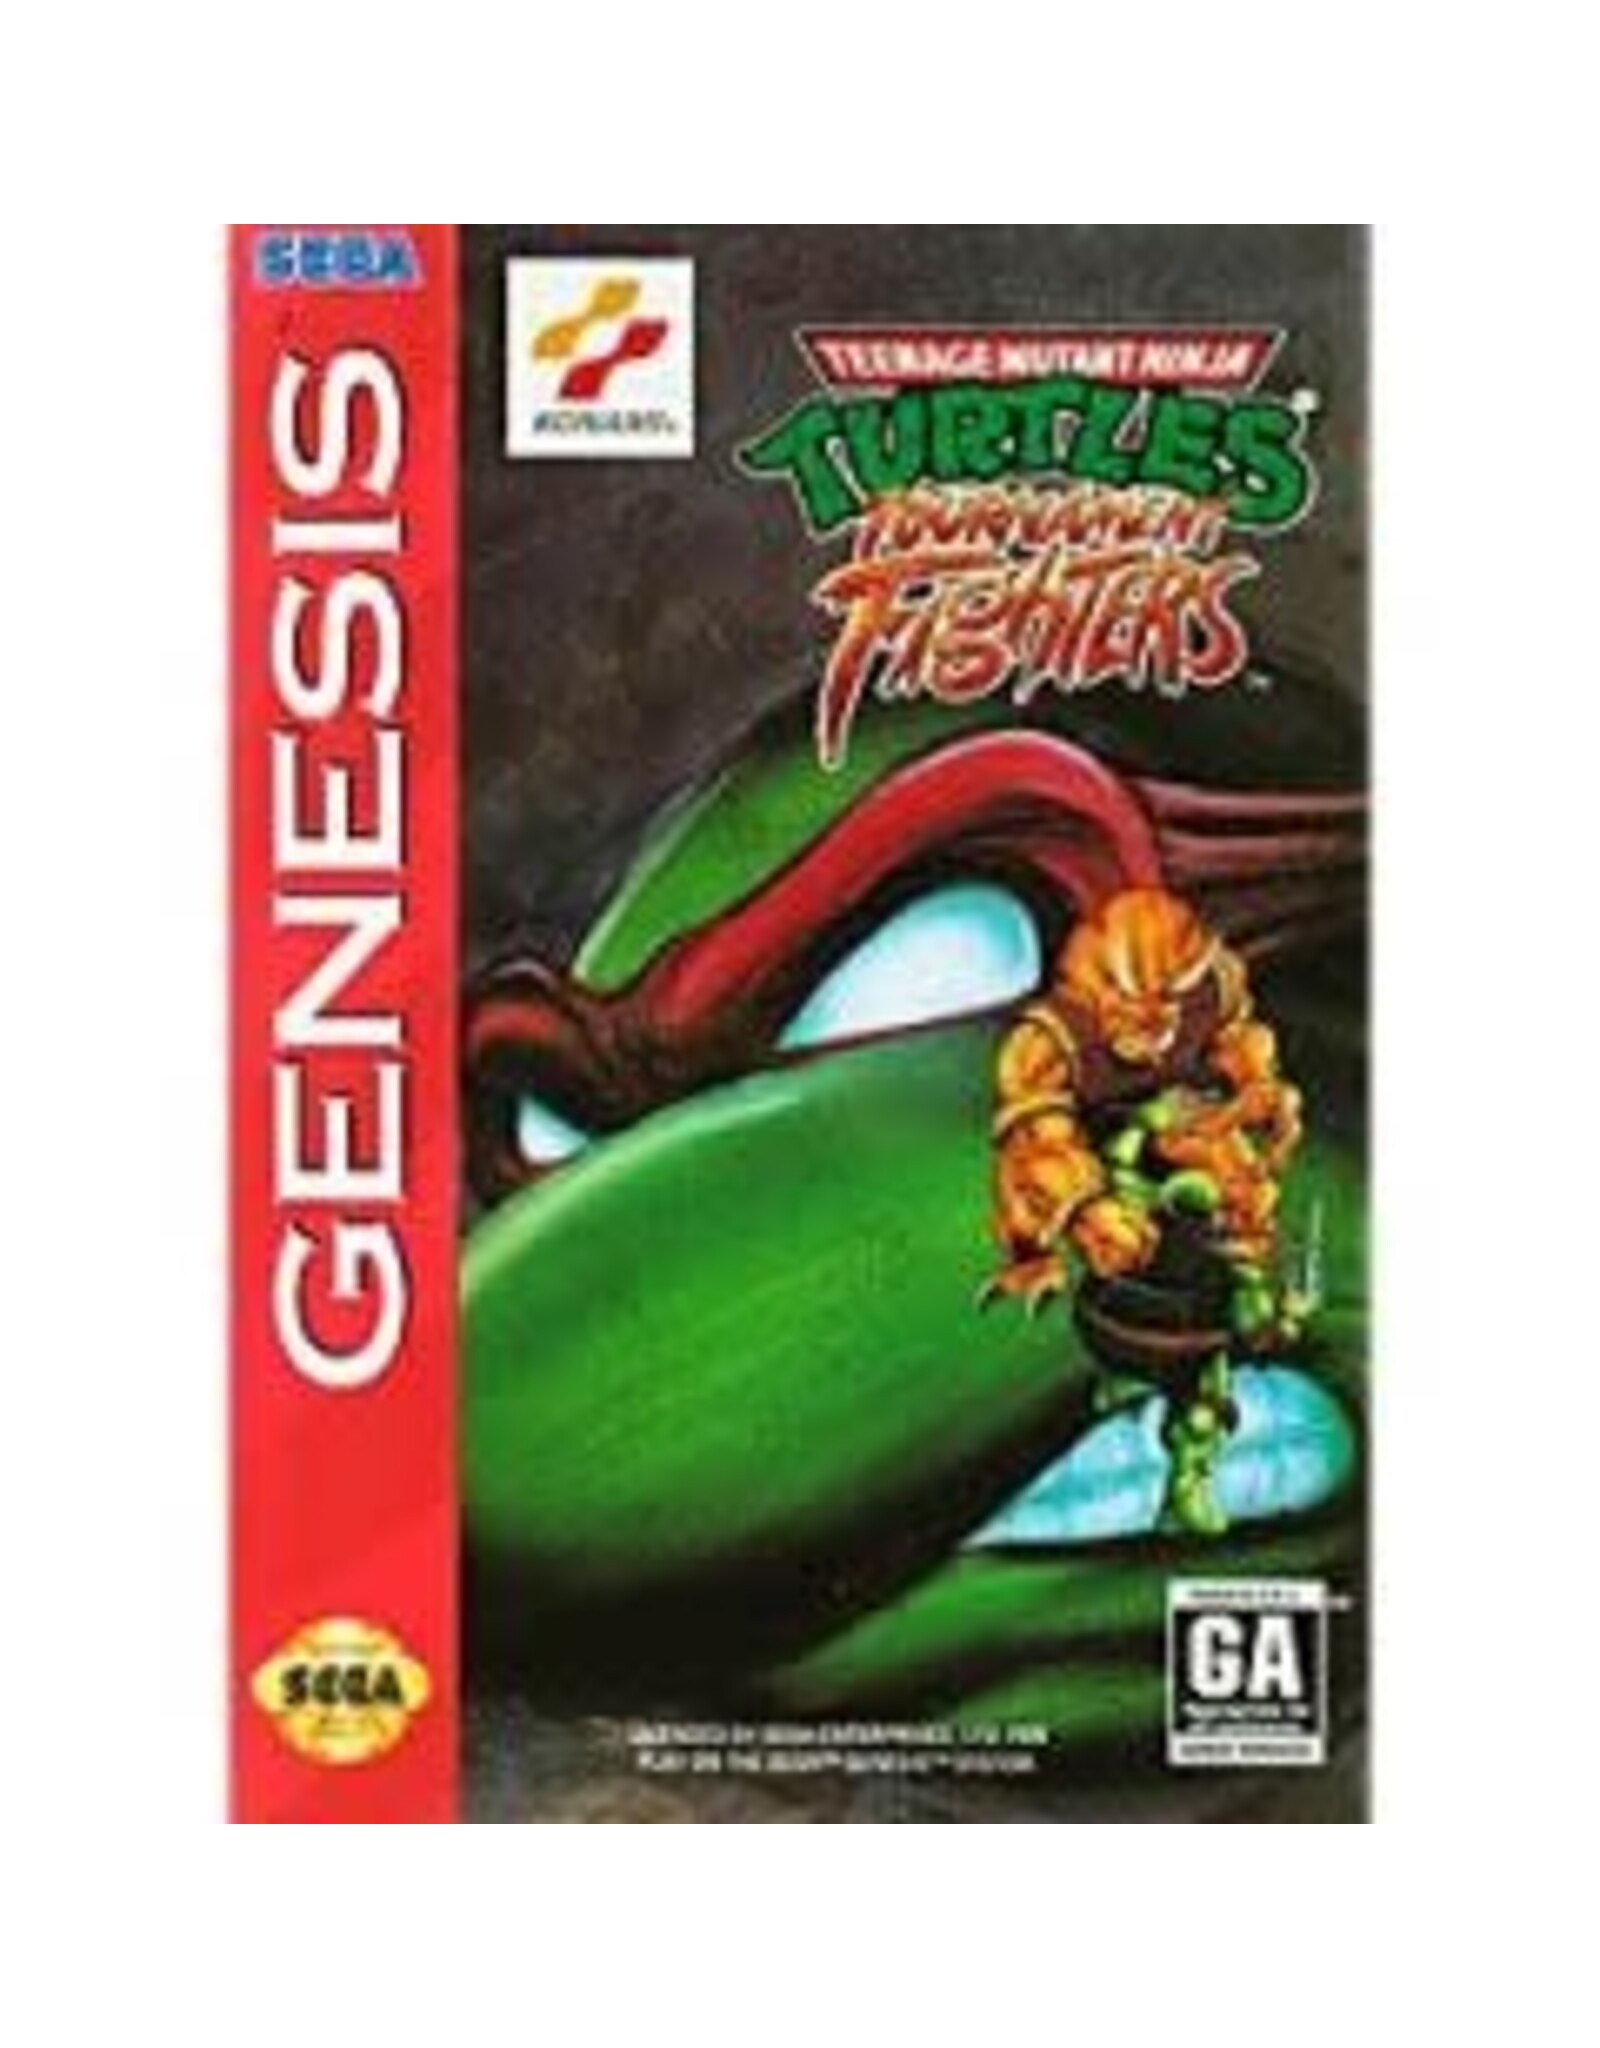 Sega Genesis Teenage Mutant Ninja Turtles Tournament Fighters (No Manual, Damaged Sleeve)